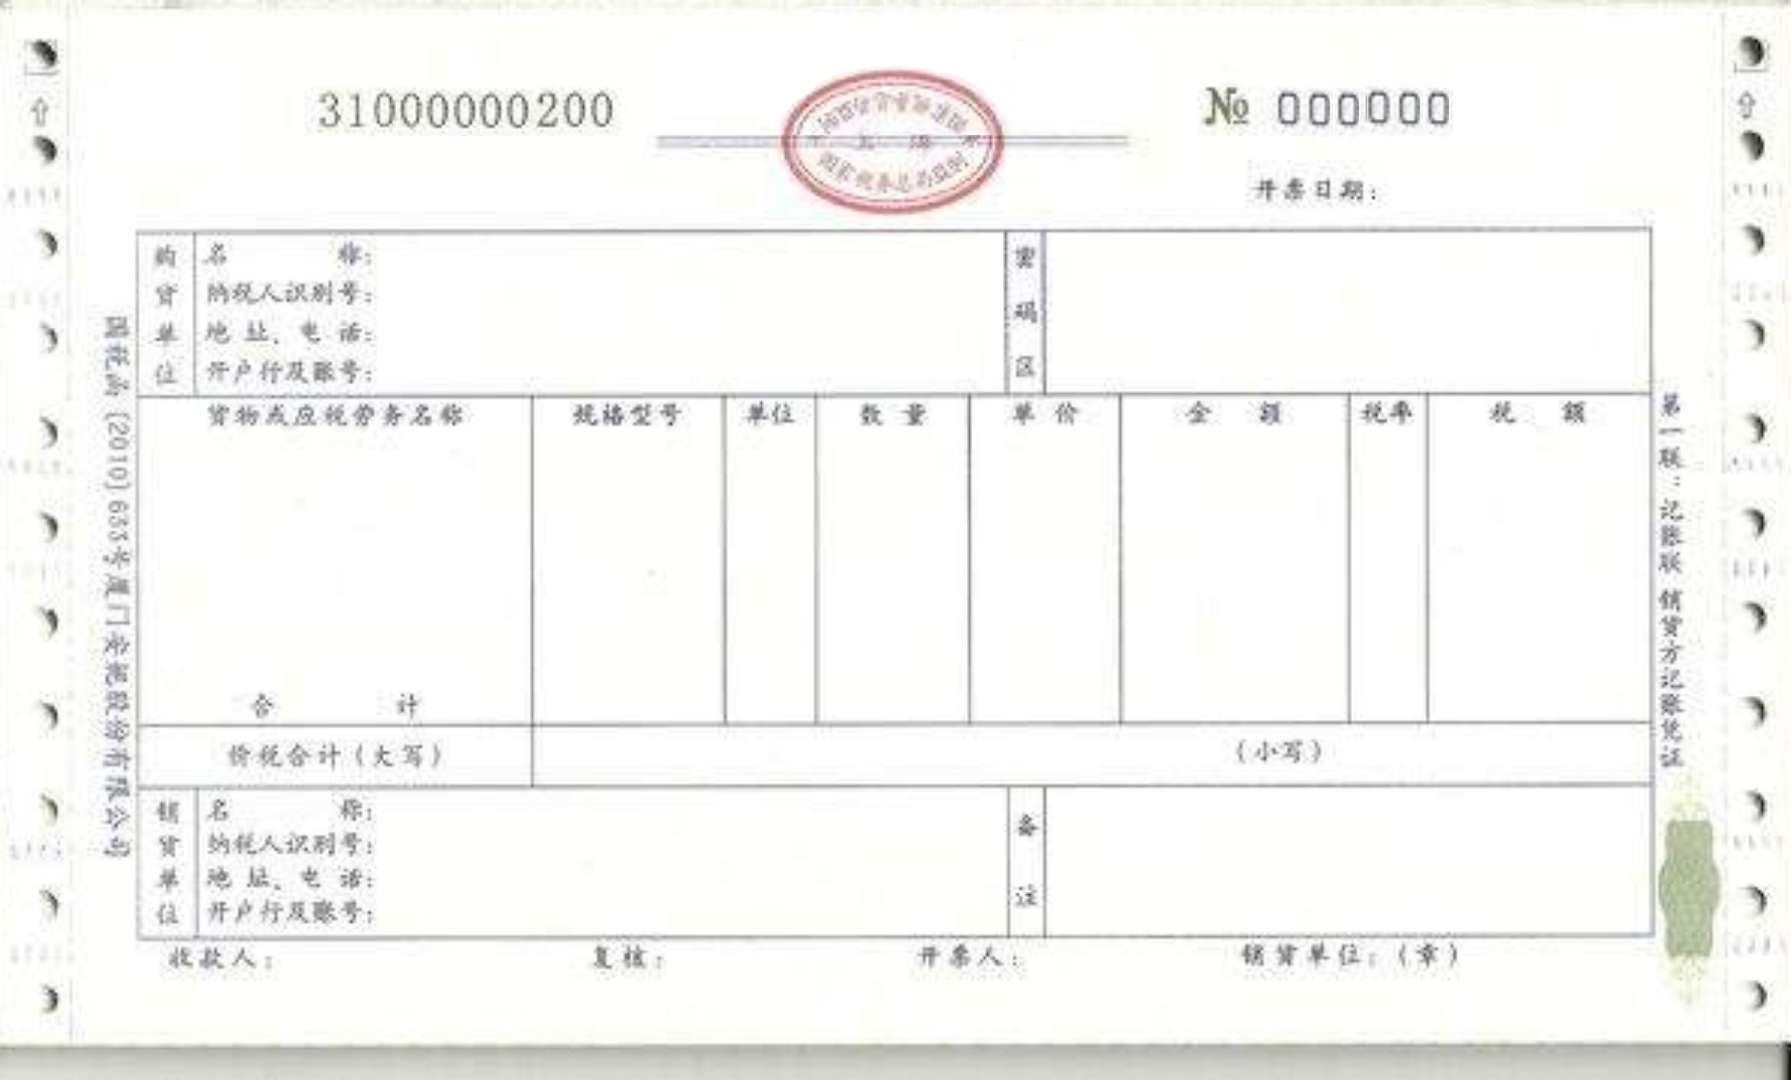 chinese invoice 发票 Hauptschablonenbild